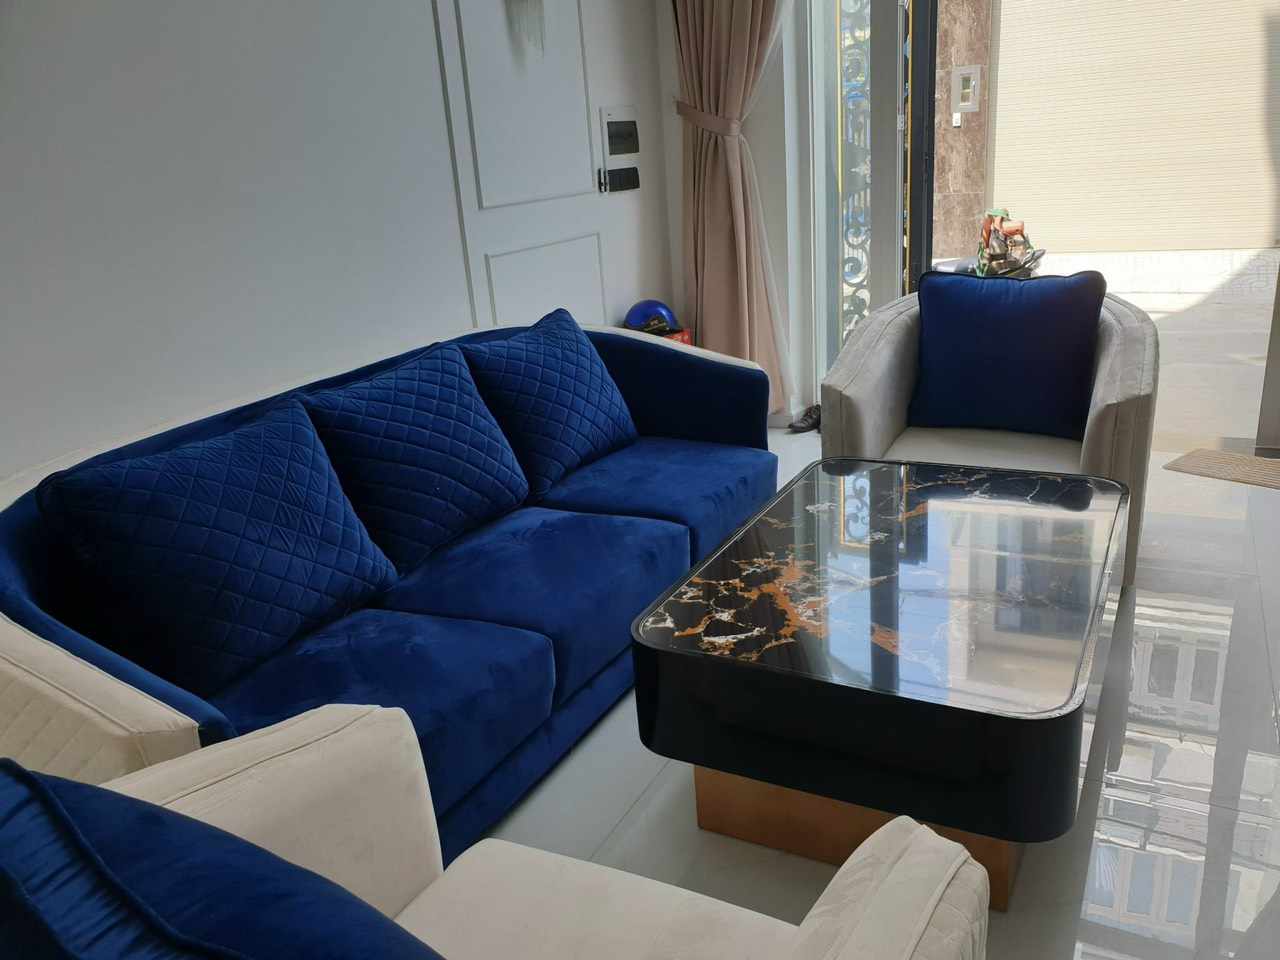 Bộ sofa luxury 2 đơn và 01 băng dài Tundo kèm bàn trà mặt đá chân titan (màu sắc tùy chọn)